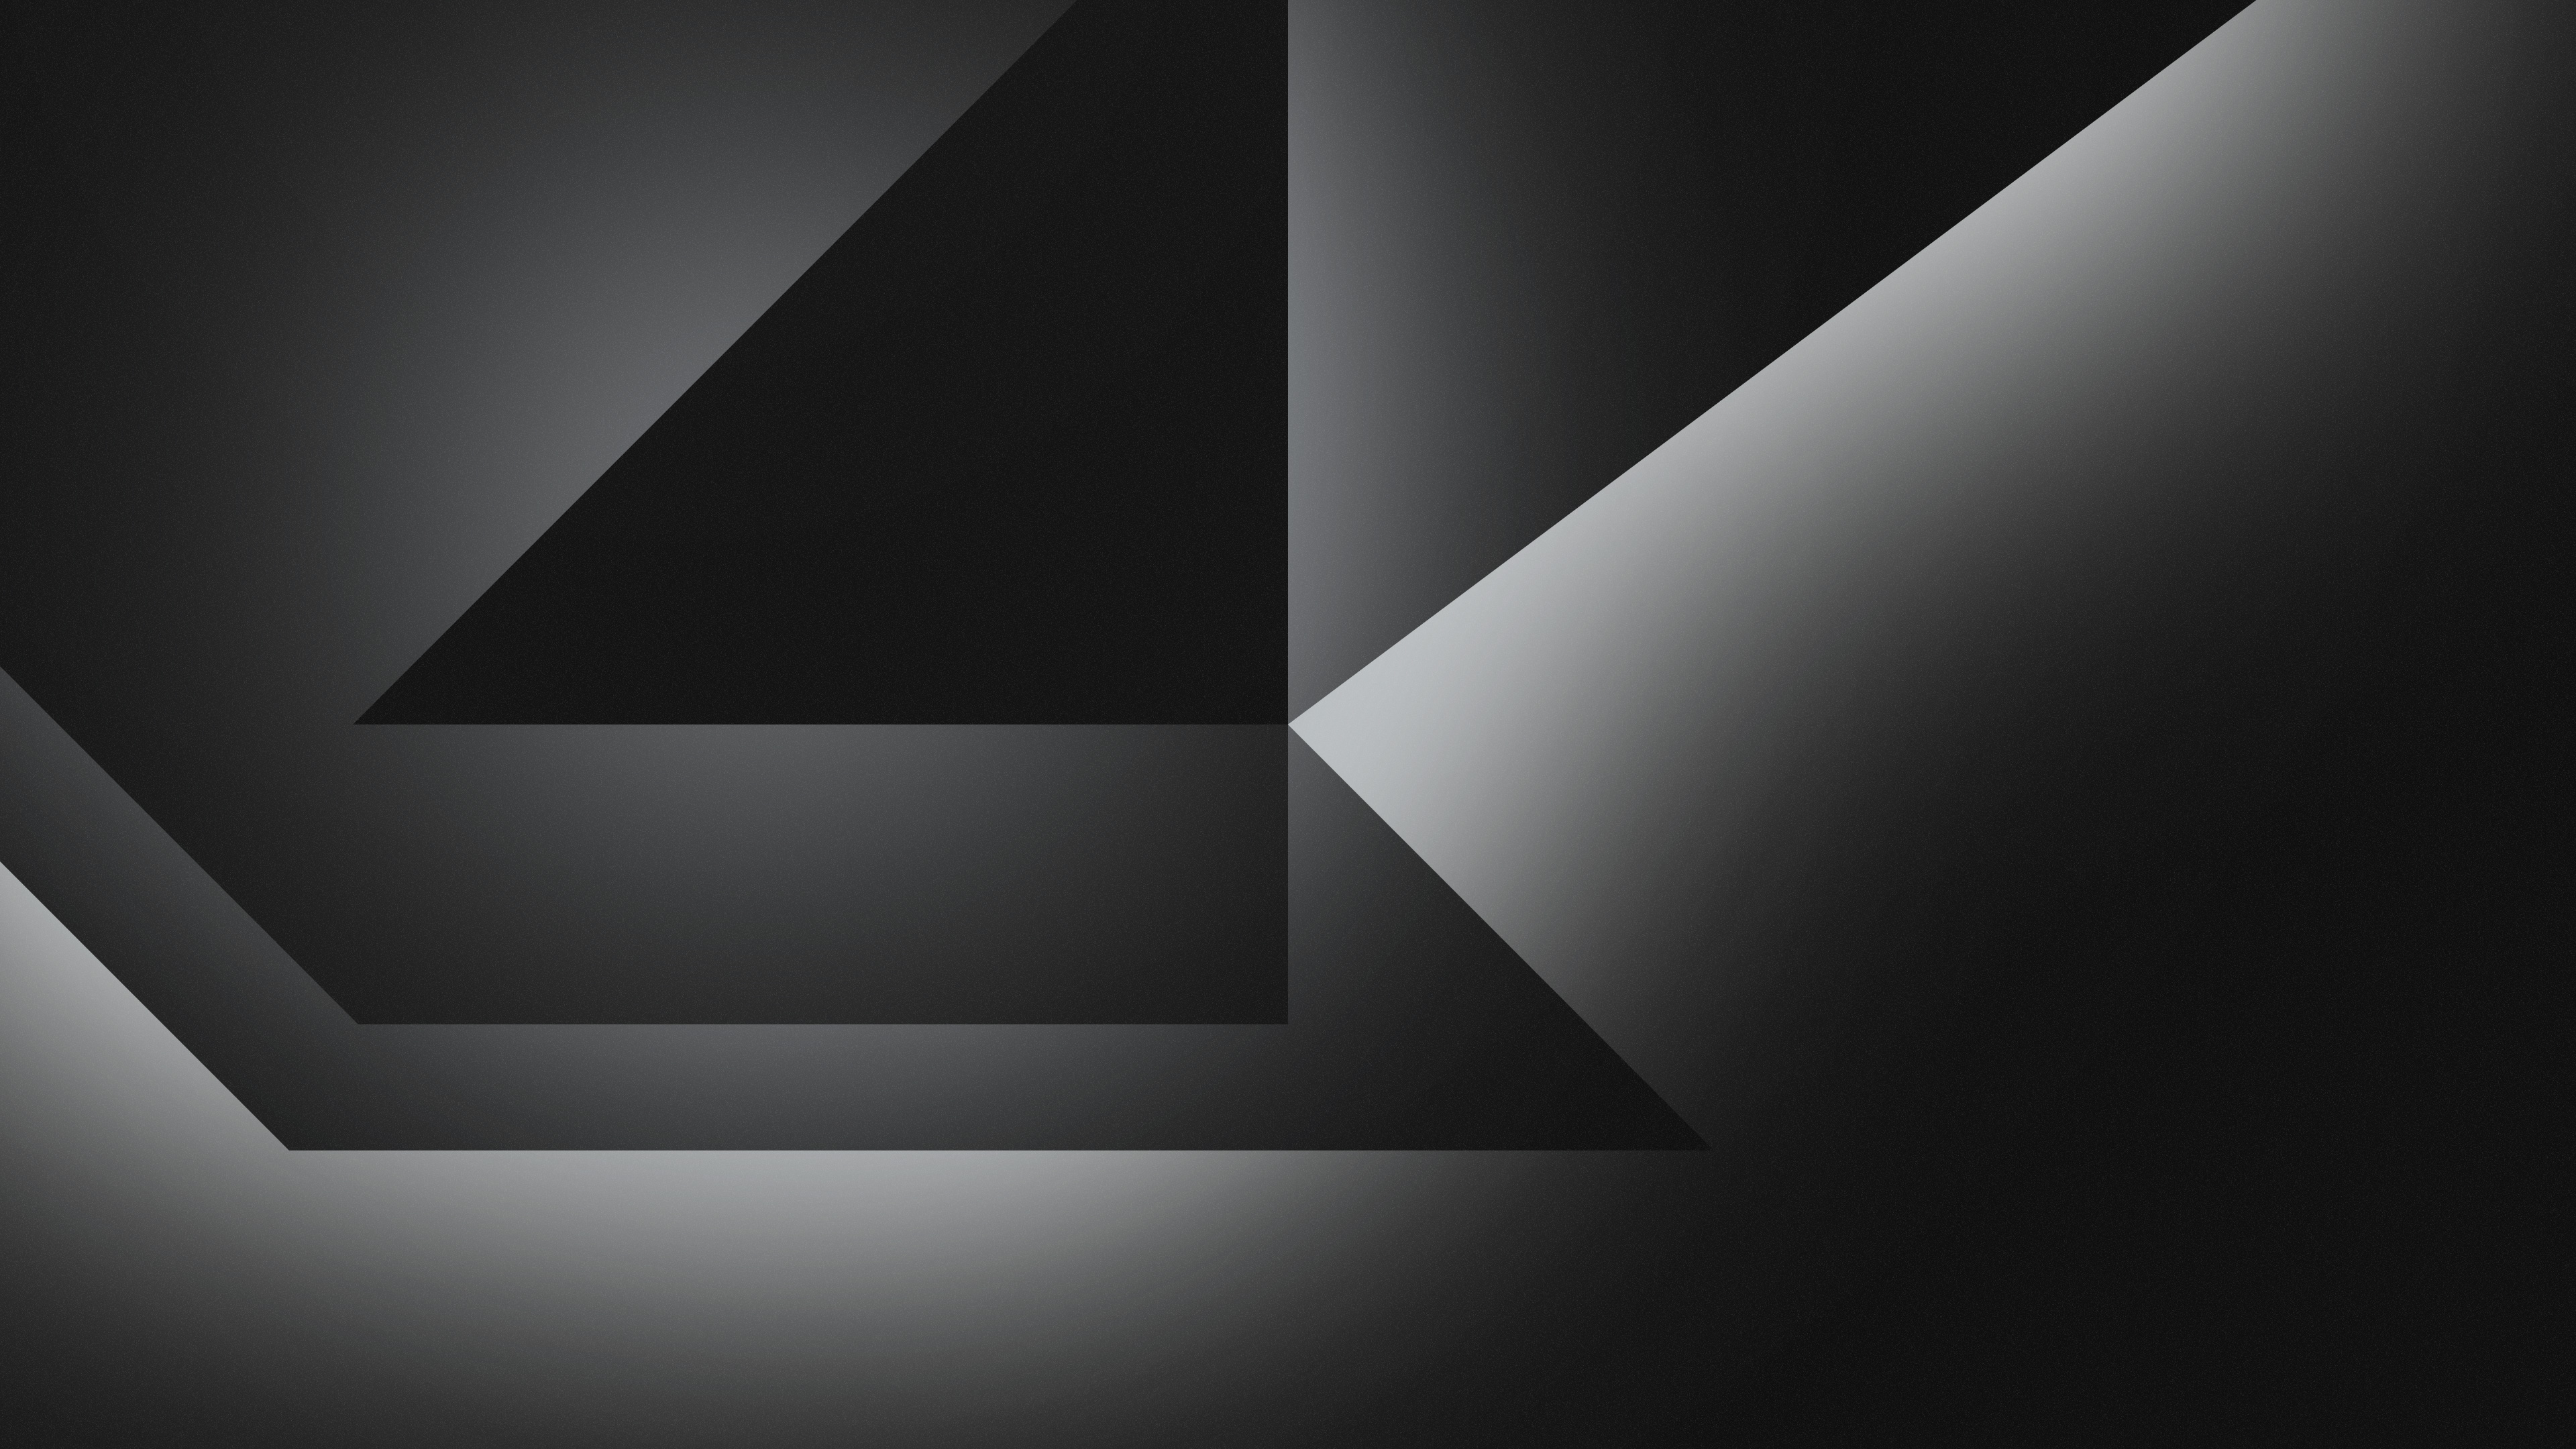 Dark Grey Abstract Shapes 4k Wallpaper,HD Abstract Wallpapers,4k